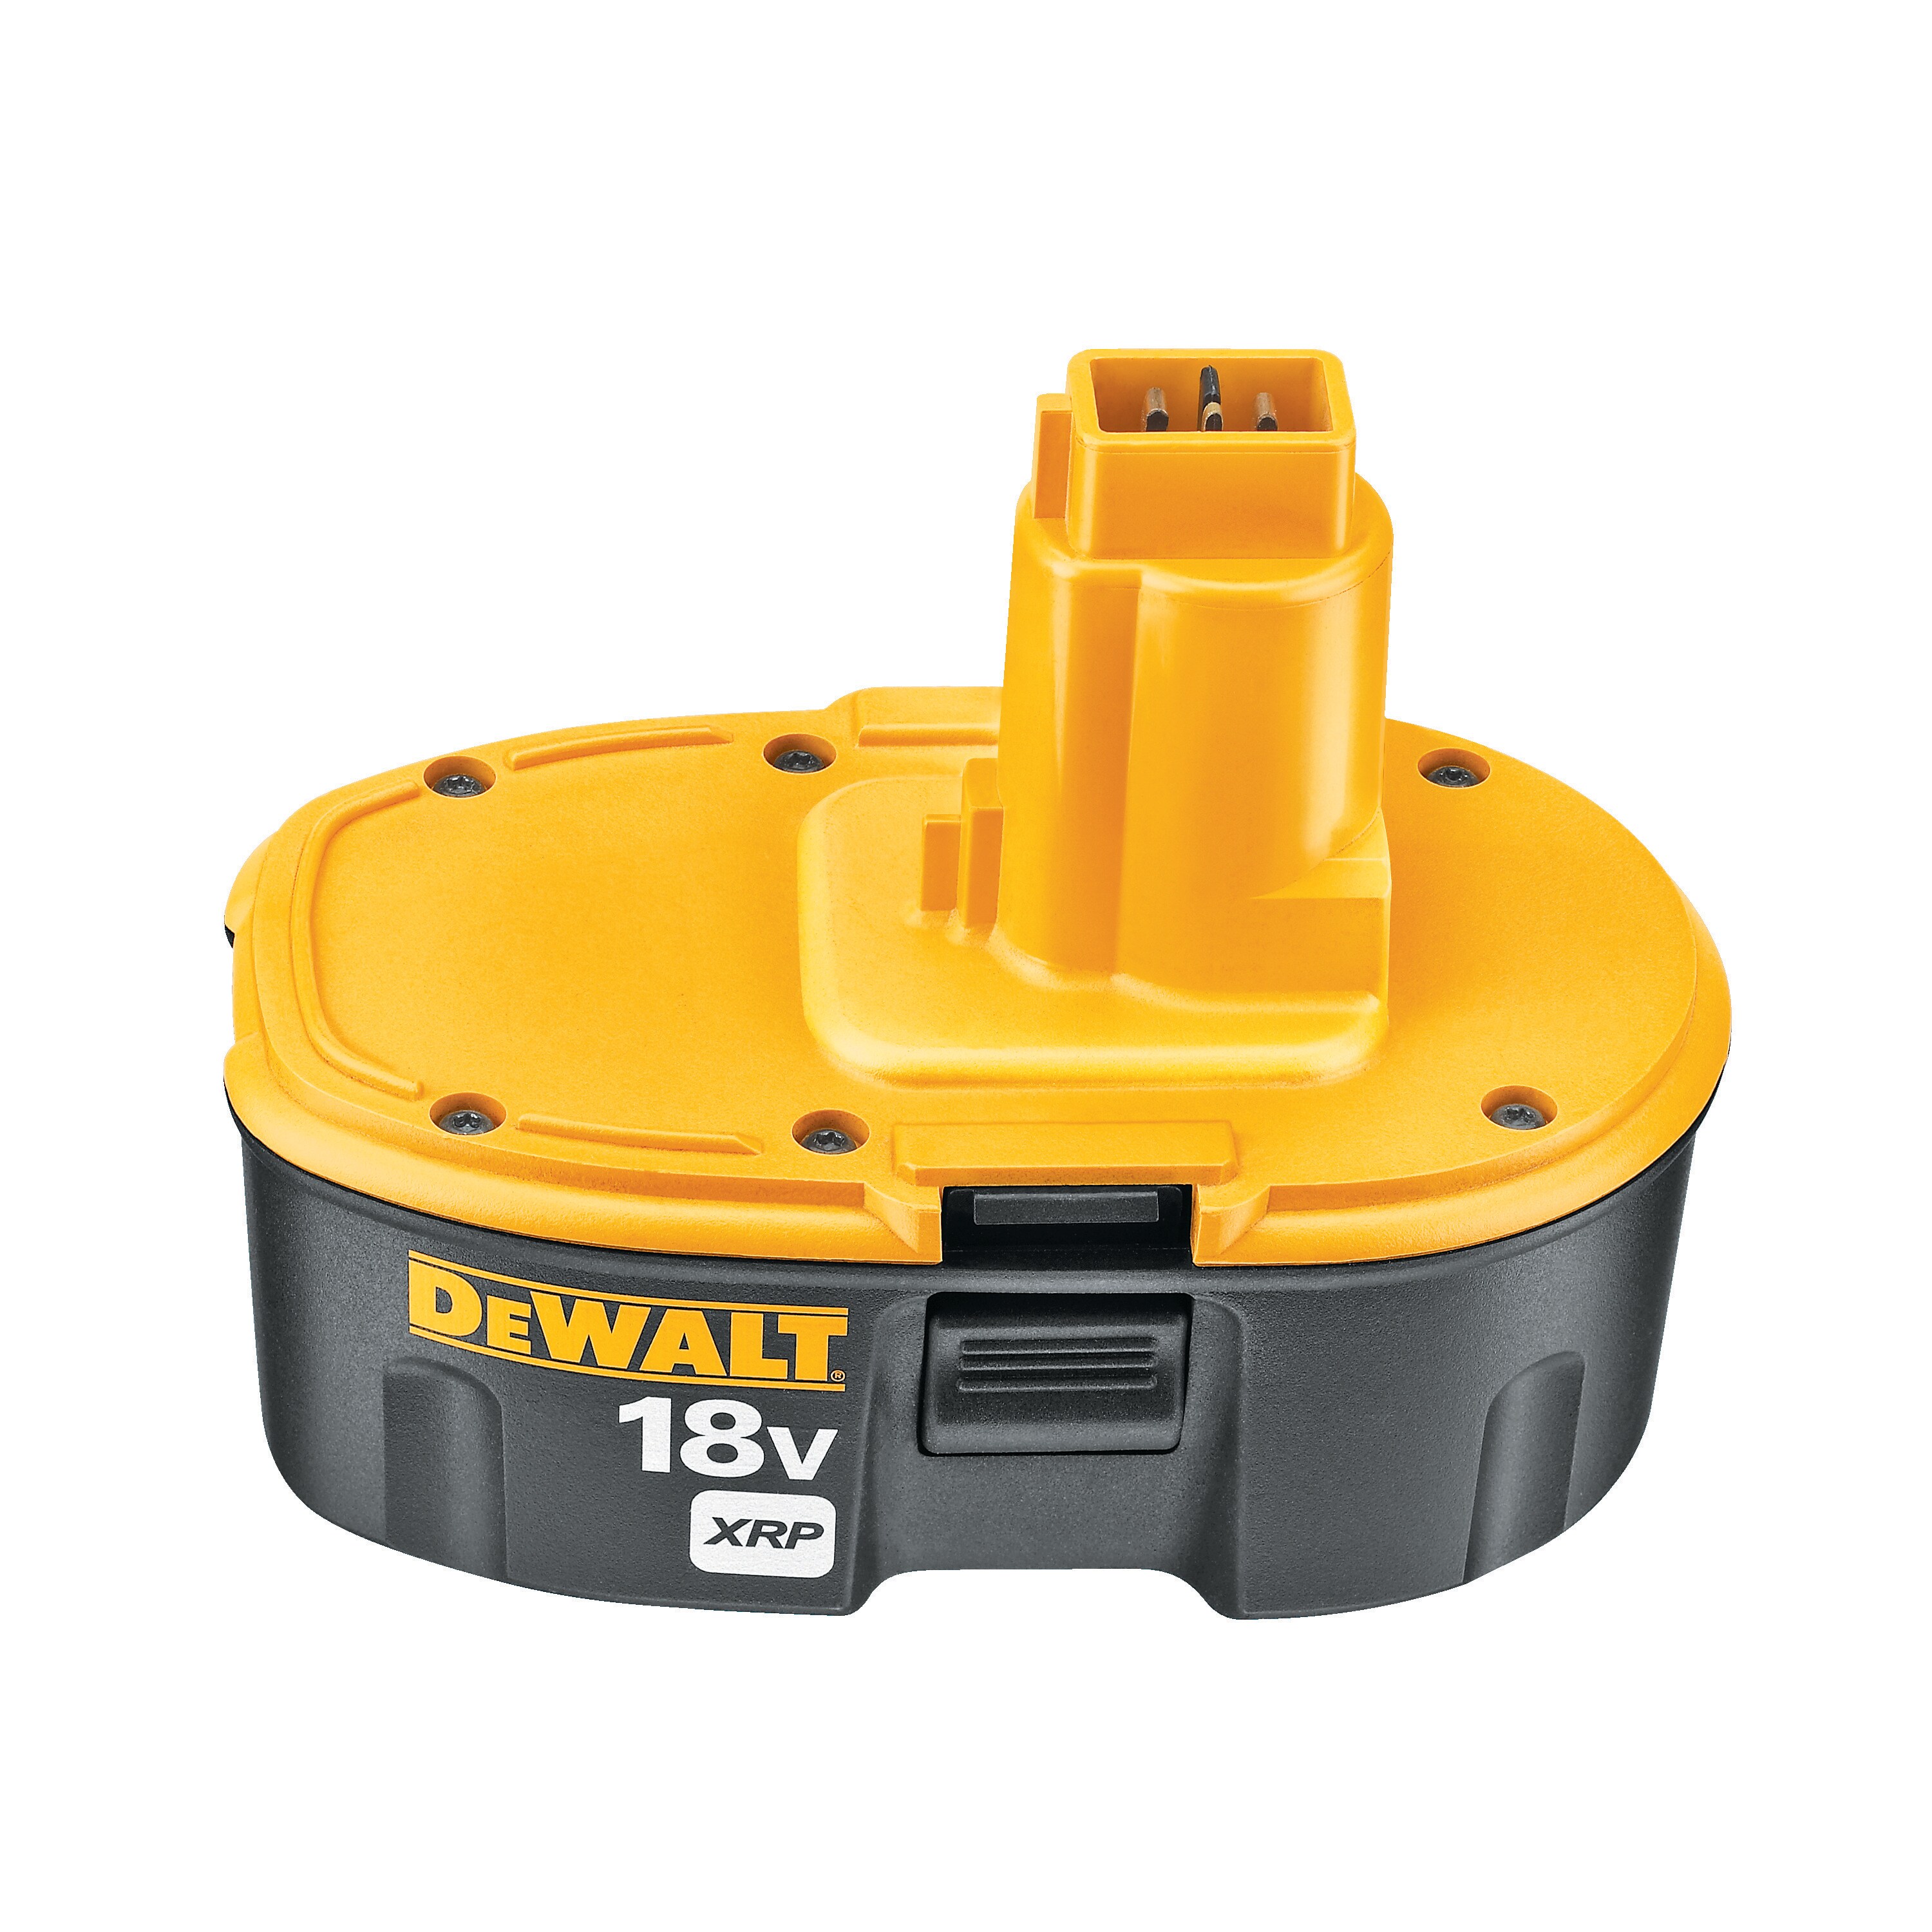 Pack de 2 outils sans fil DEWALT Dck2079mdr-qw, 18 V 4+2 Ah, 2 batteries